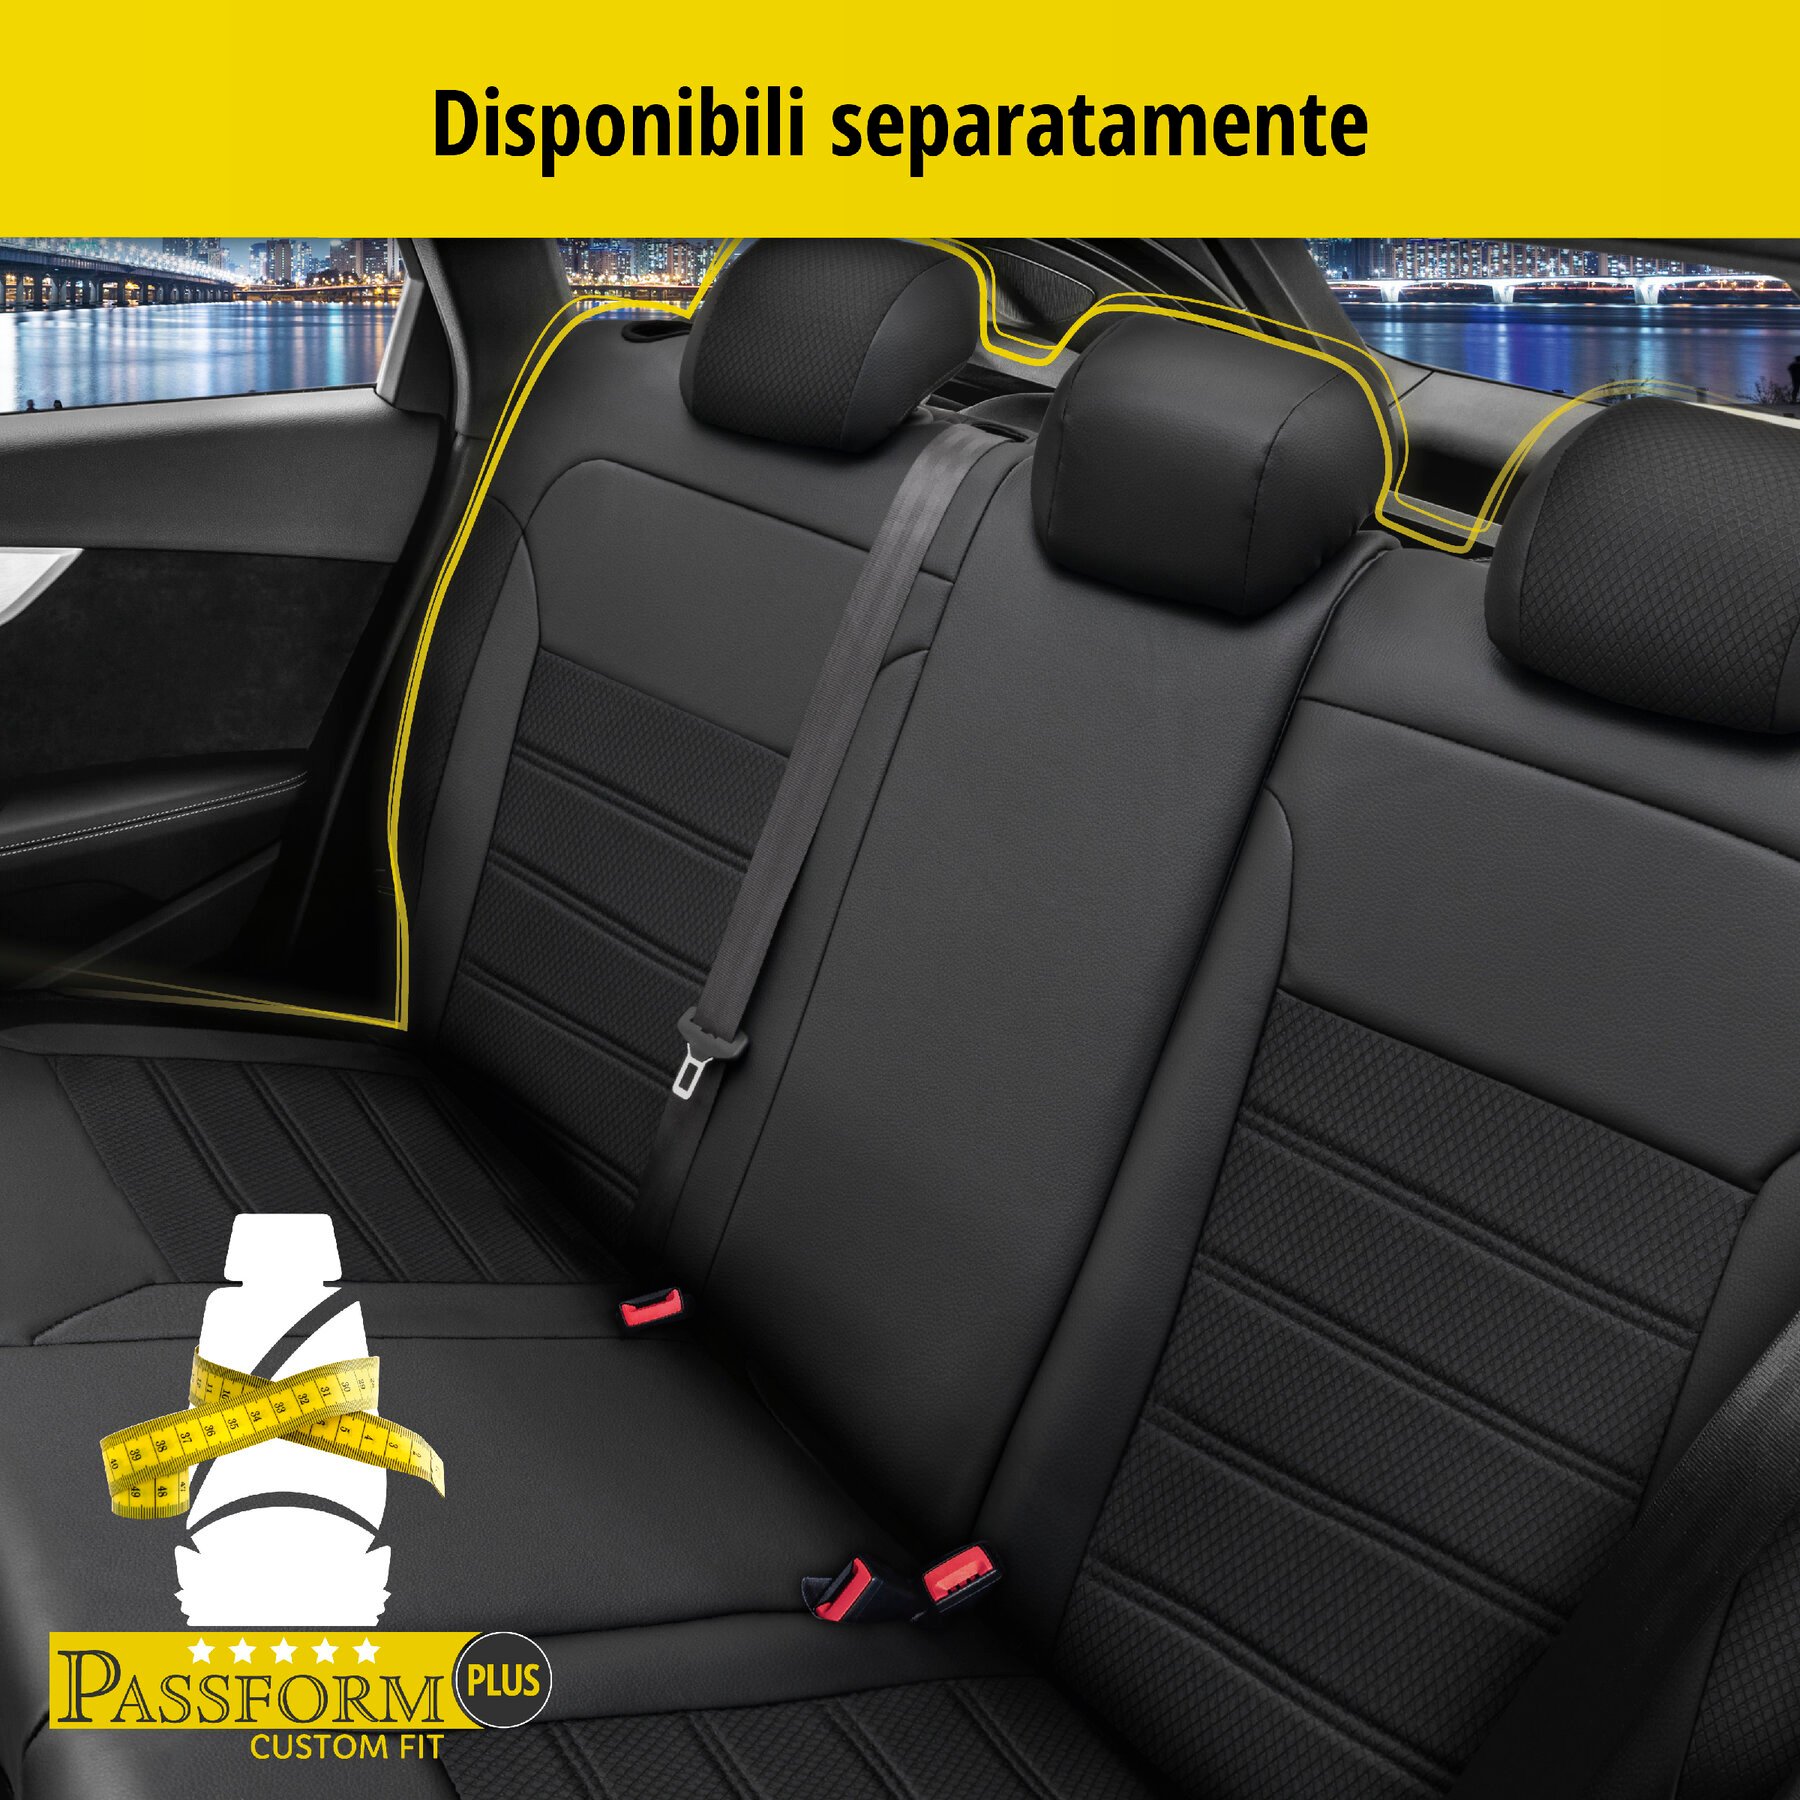 Coprisedili Aversa per VW Tiguan (AD1) 01/2016-Oggi, 2 coprisedili per sedili normali